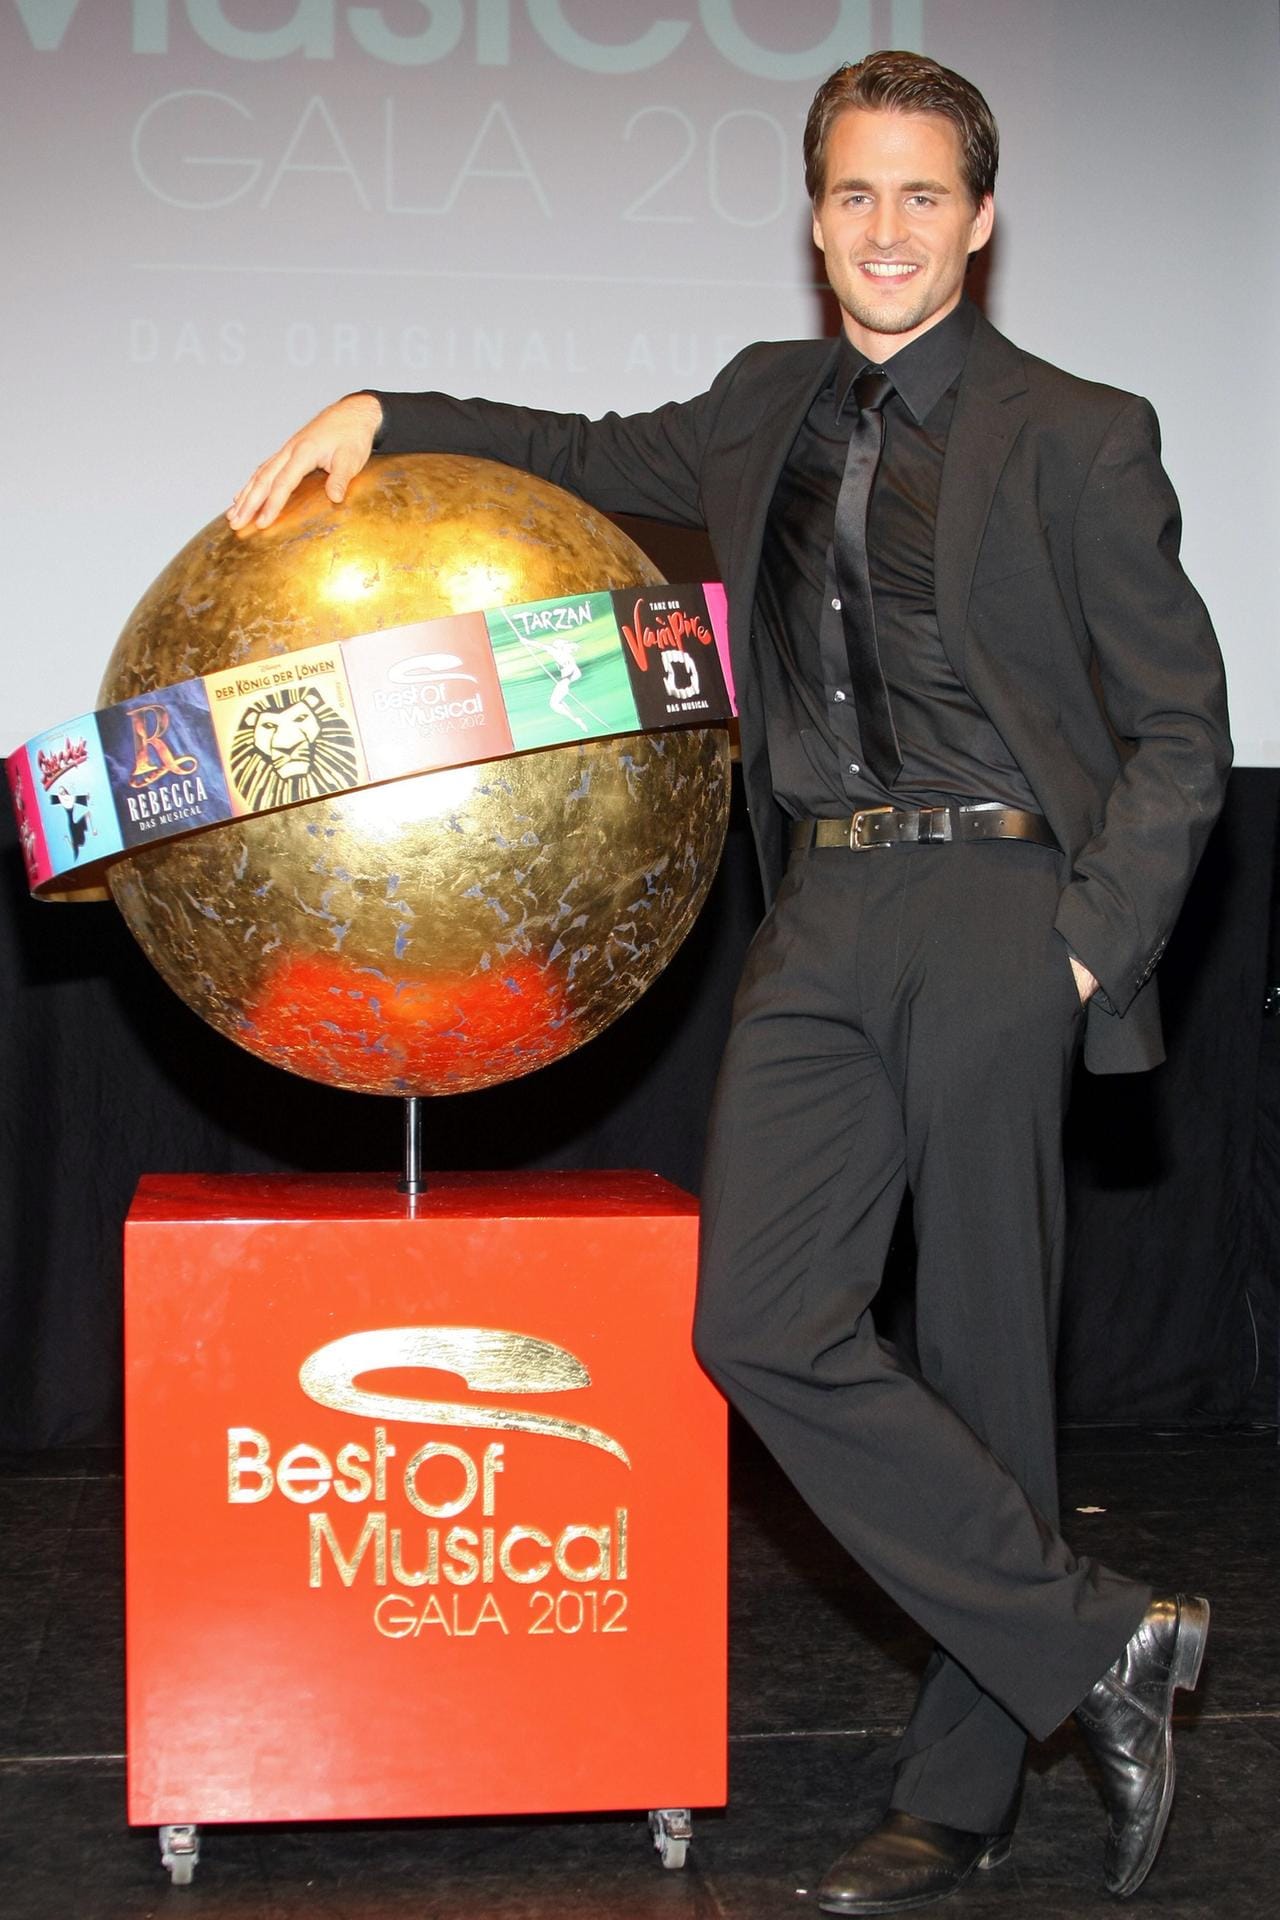 Als Solist ist Klaws 2012 auf der "Best of Musical-Gala" zu sehen.